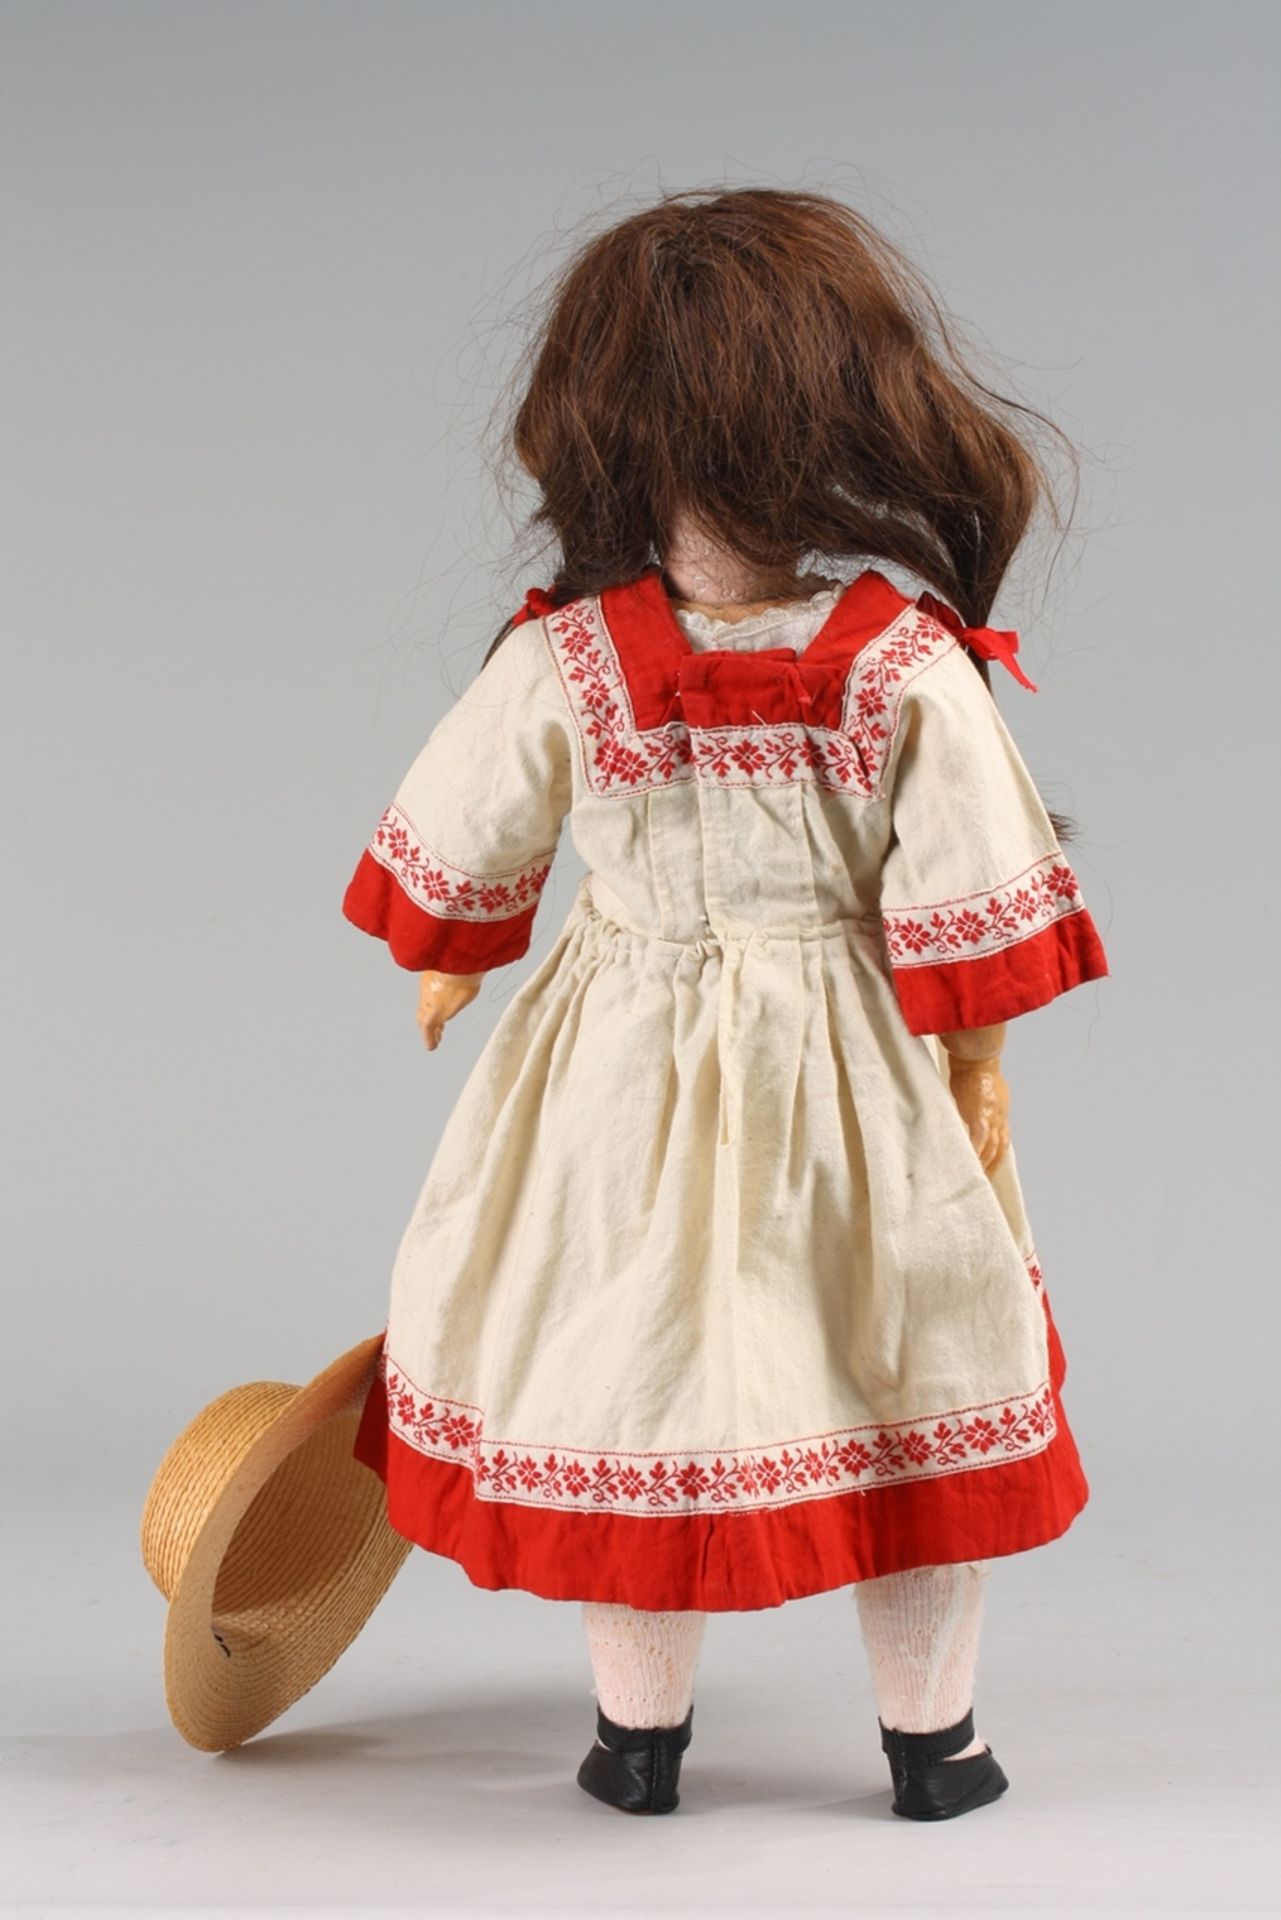 Historisches Porzellankopf-Puppenmädchen - Bild 6 aus 7